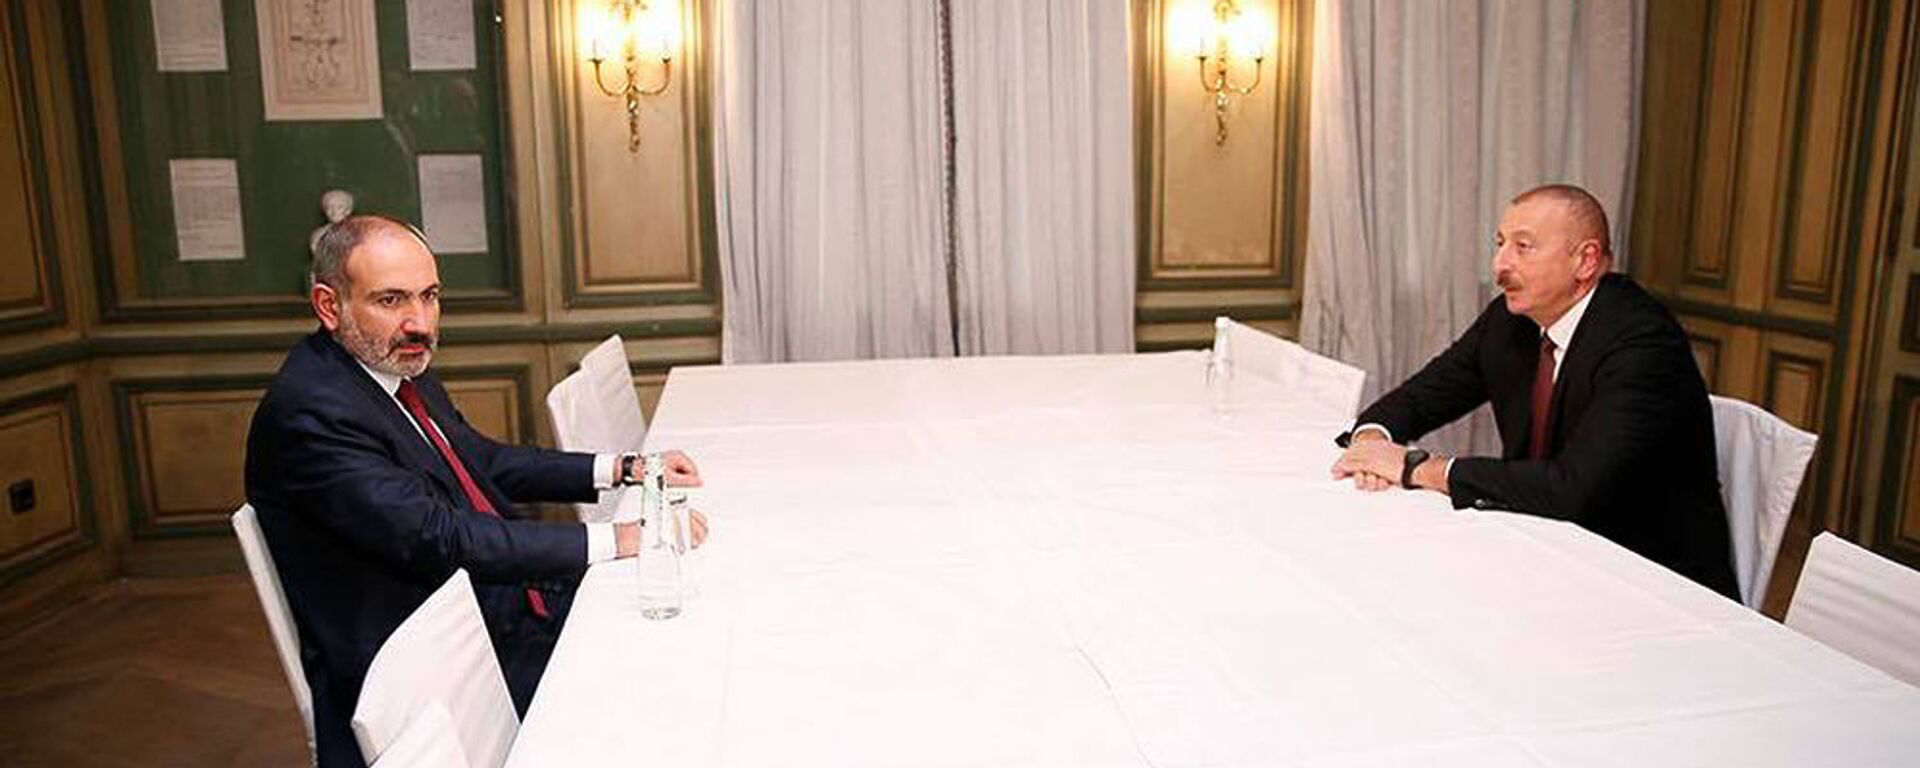 Встреча премьер-министра Армении Никола Пашиняна и президента Азербайджана Ильхама Алиева (15 февраля 2020). Мюнхен - Sputnik Армения, 1920, 21.04.2021